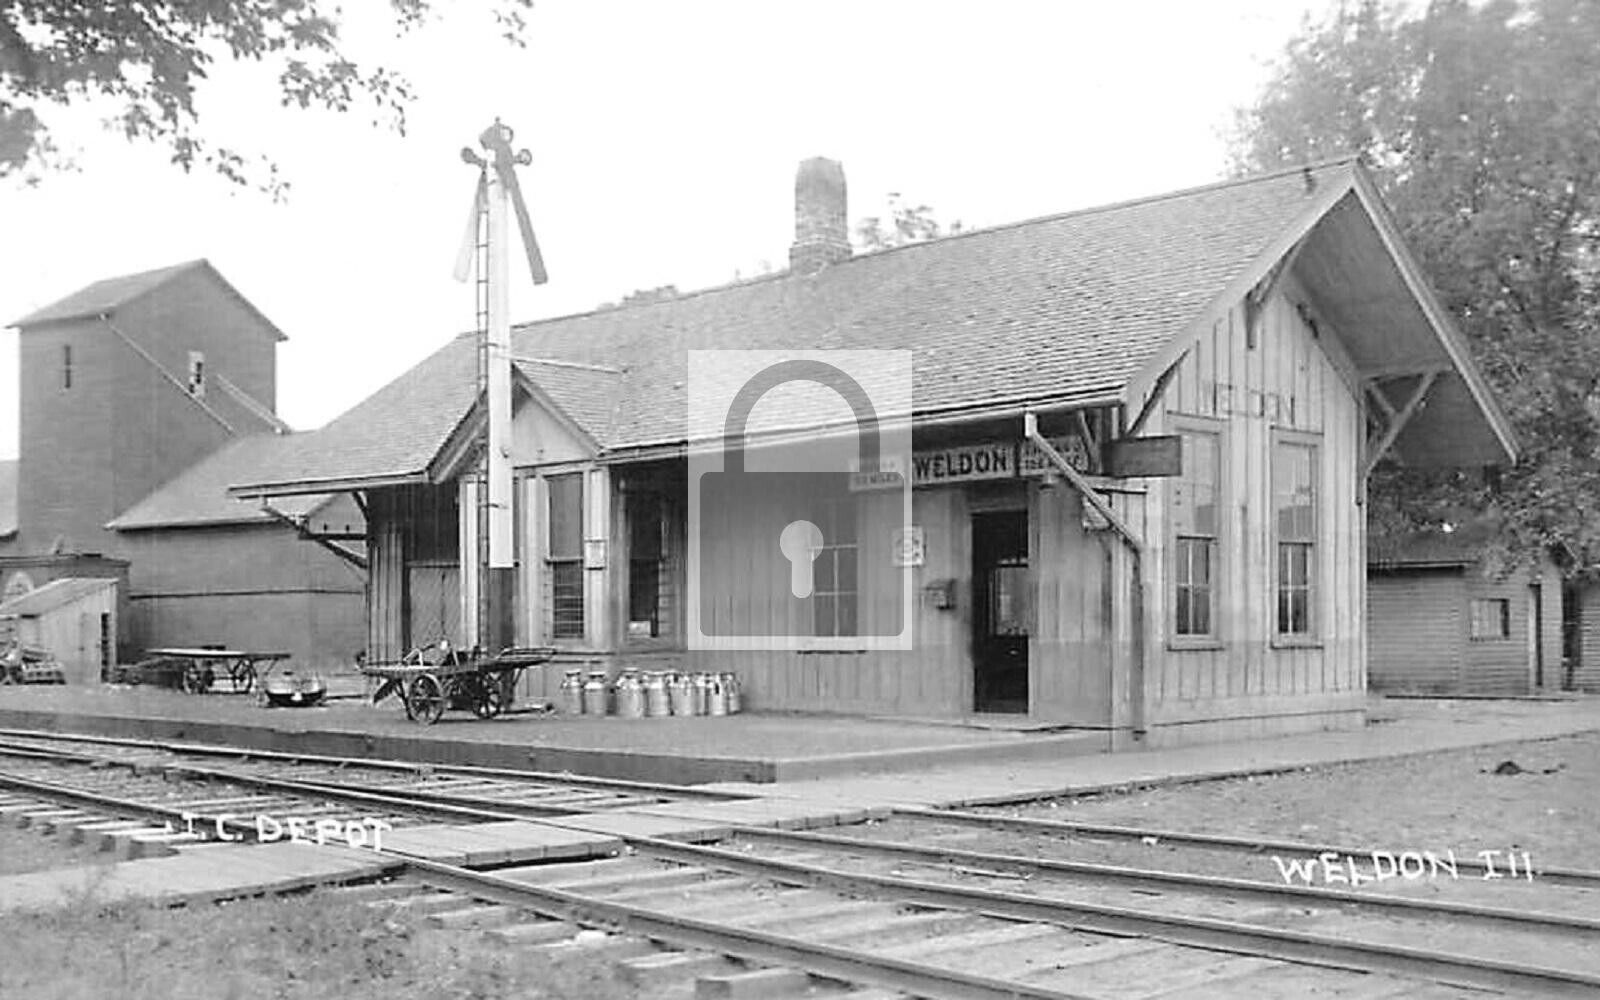 Railroad Train Station Depot Weldon Illinois IL - 8x10 Reprint